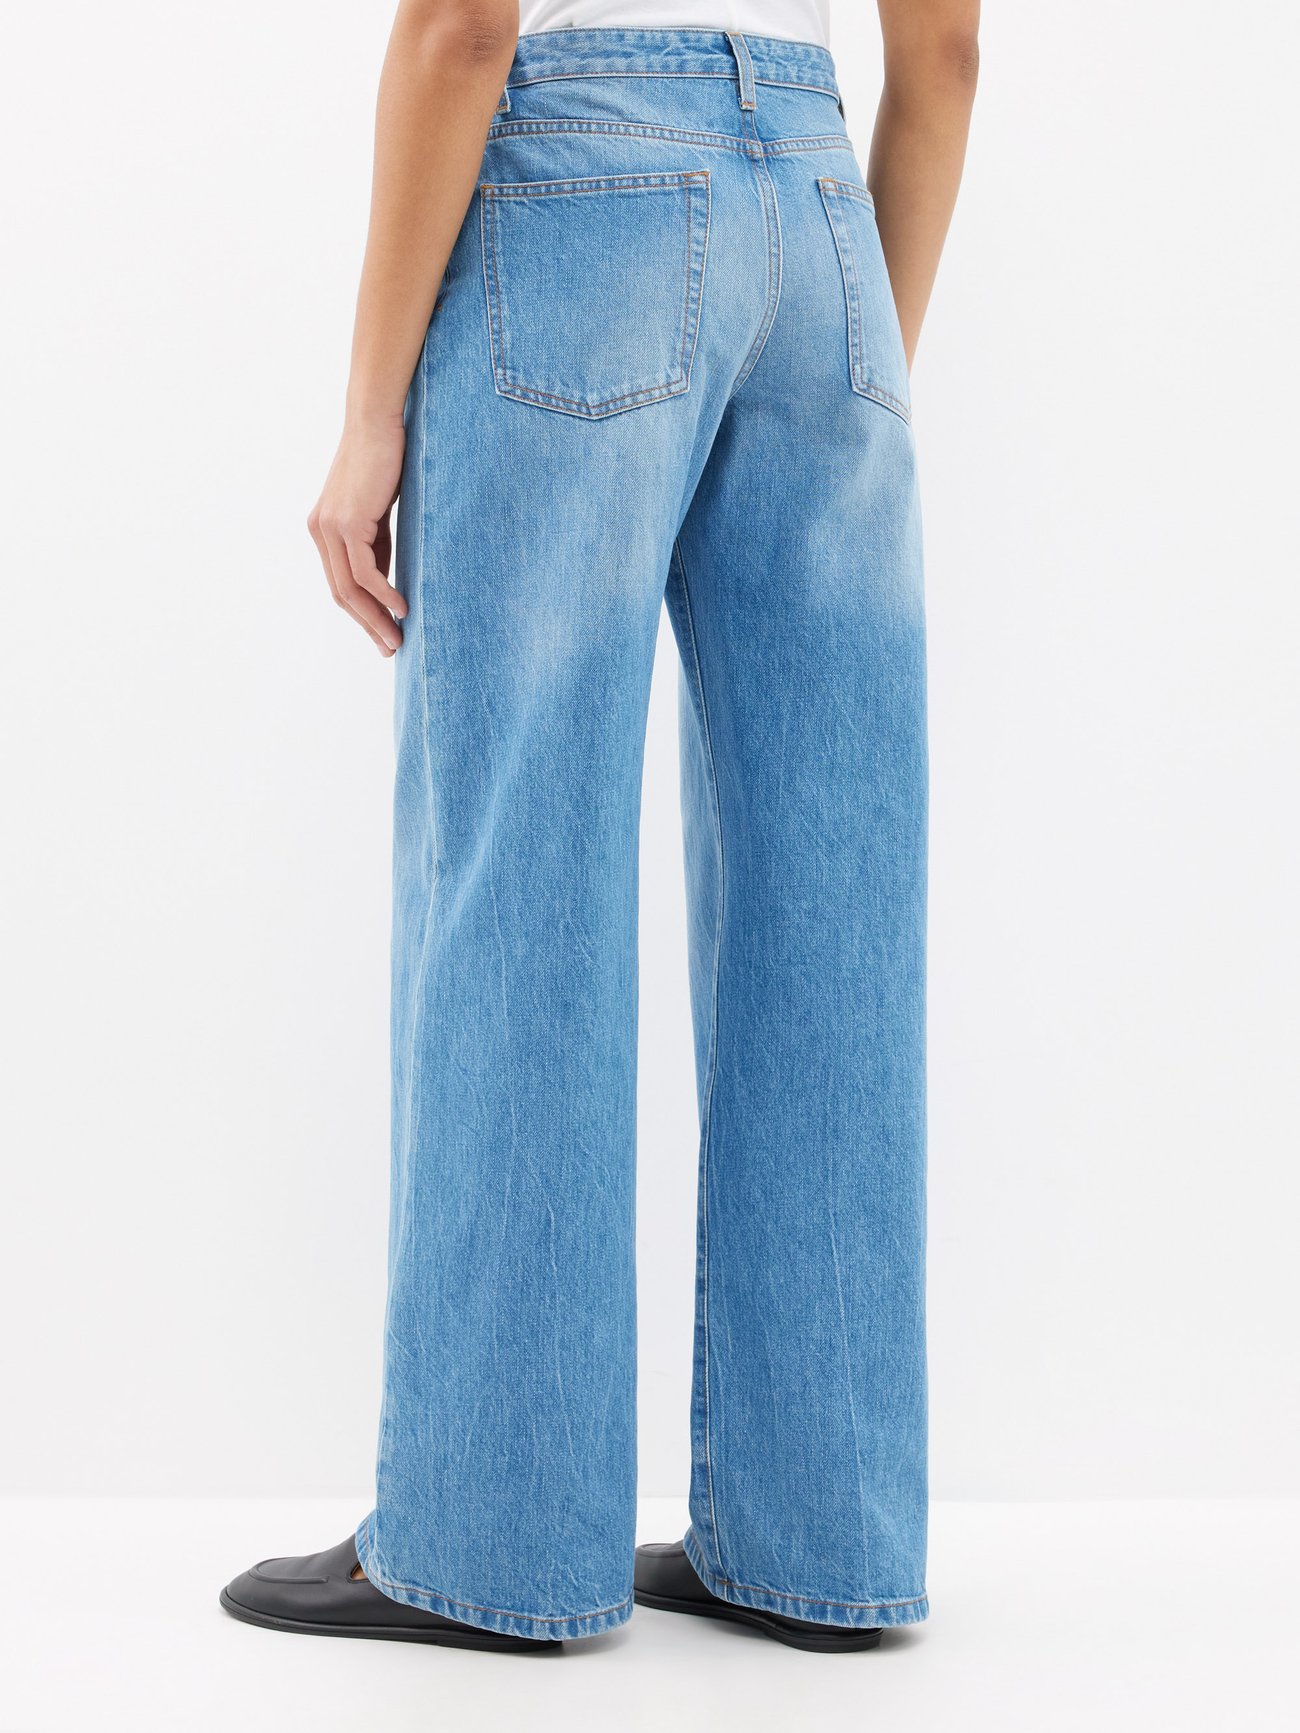 Eglitta wide-leg jeans